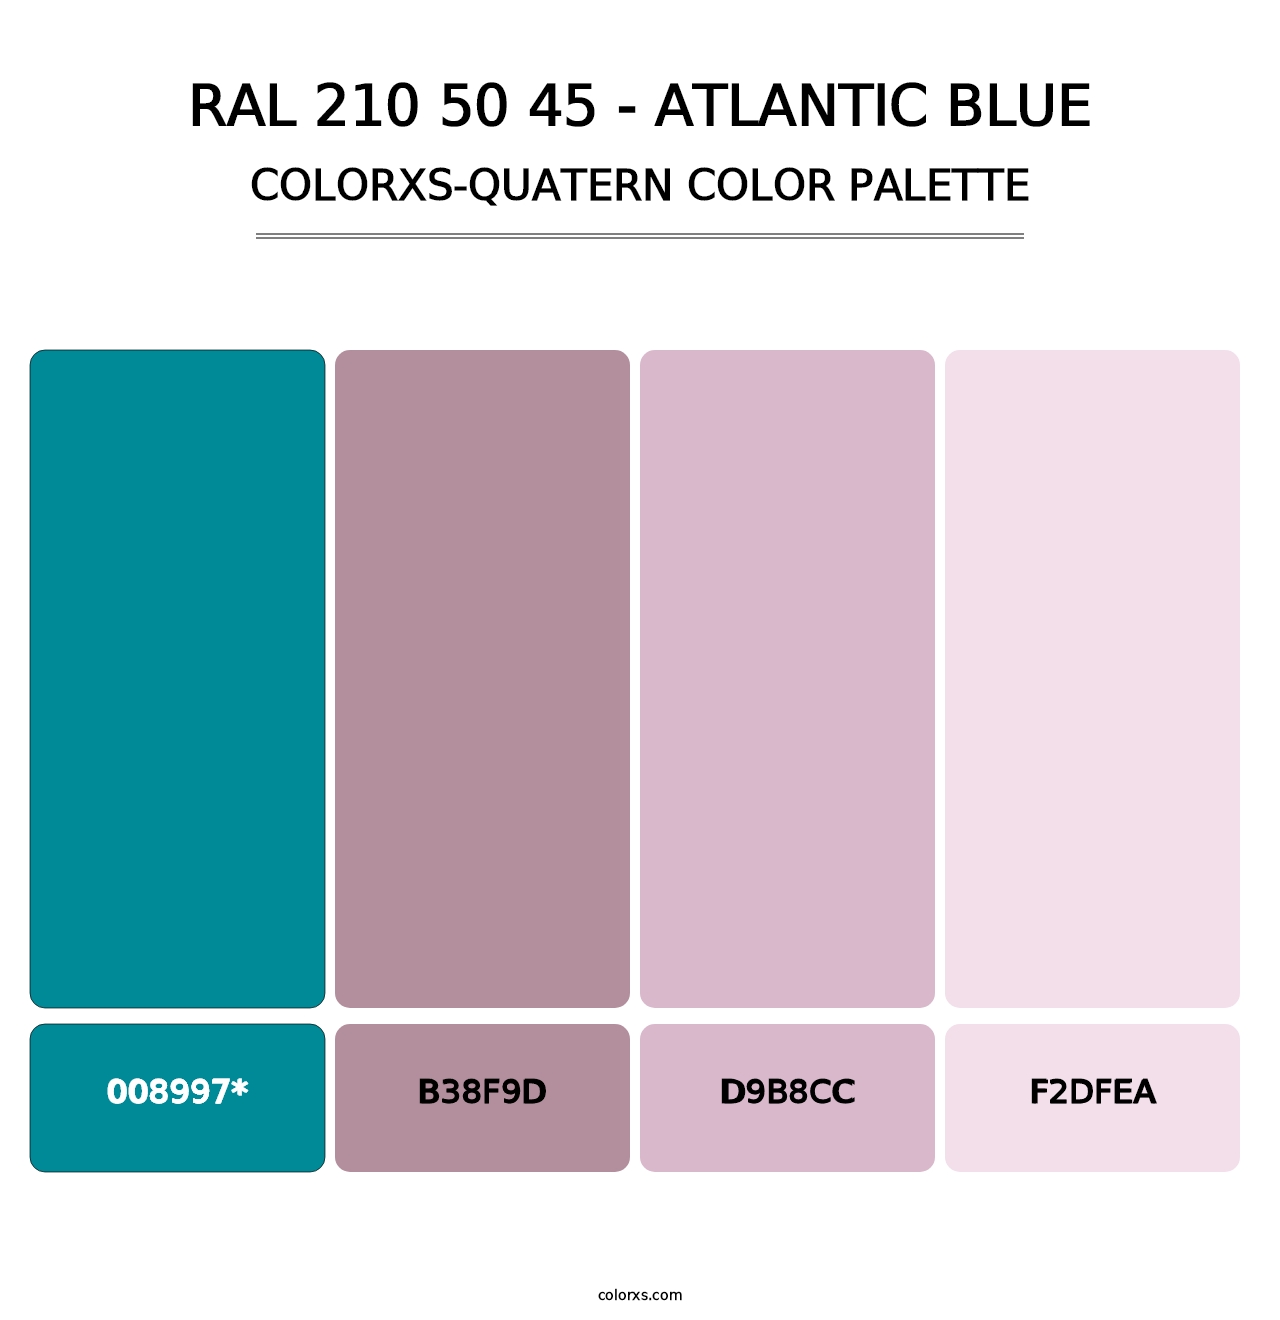 RAL 210 50 45 - Atlantic Blue - Colorxs Quatern Palette